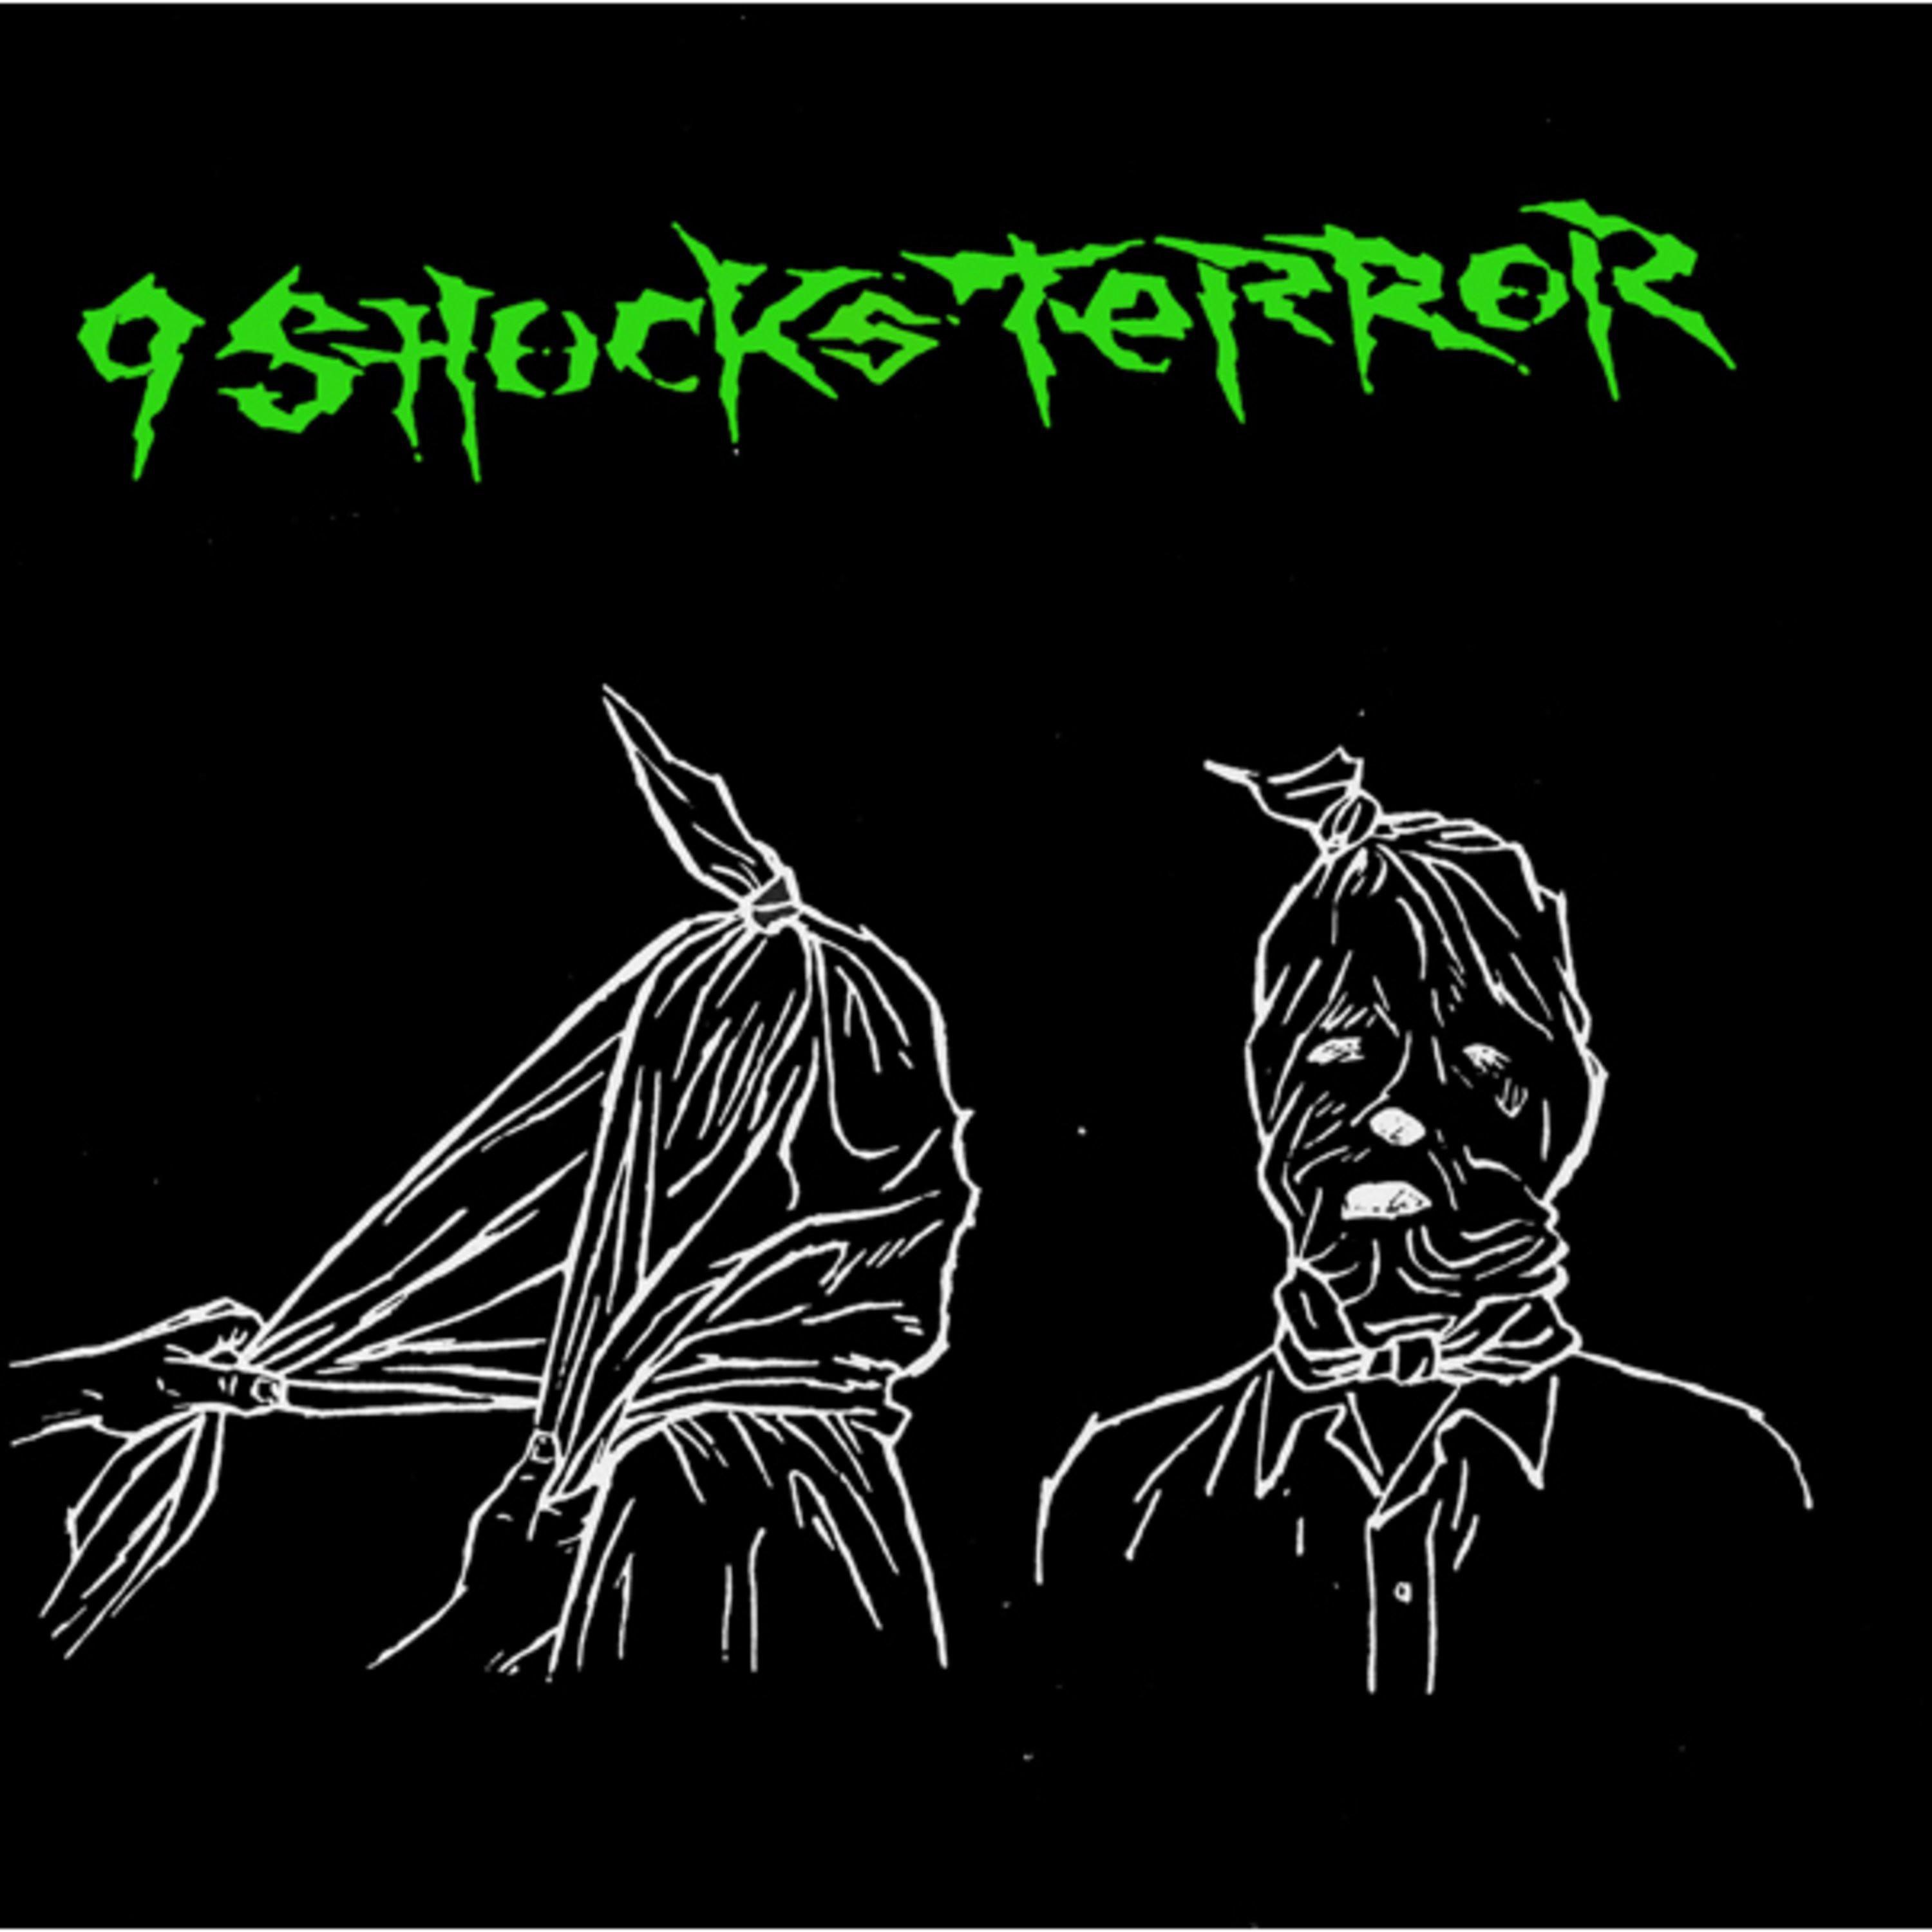 9 Shocks Terror